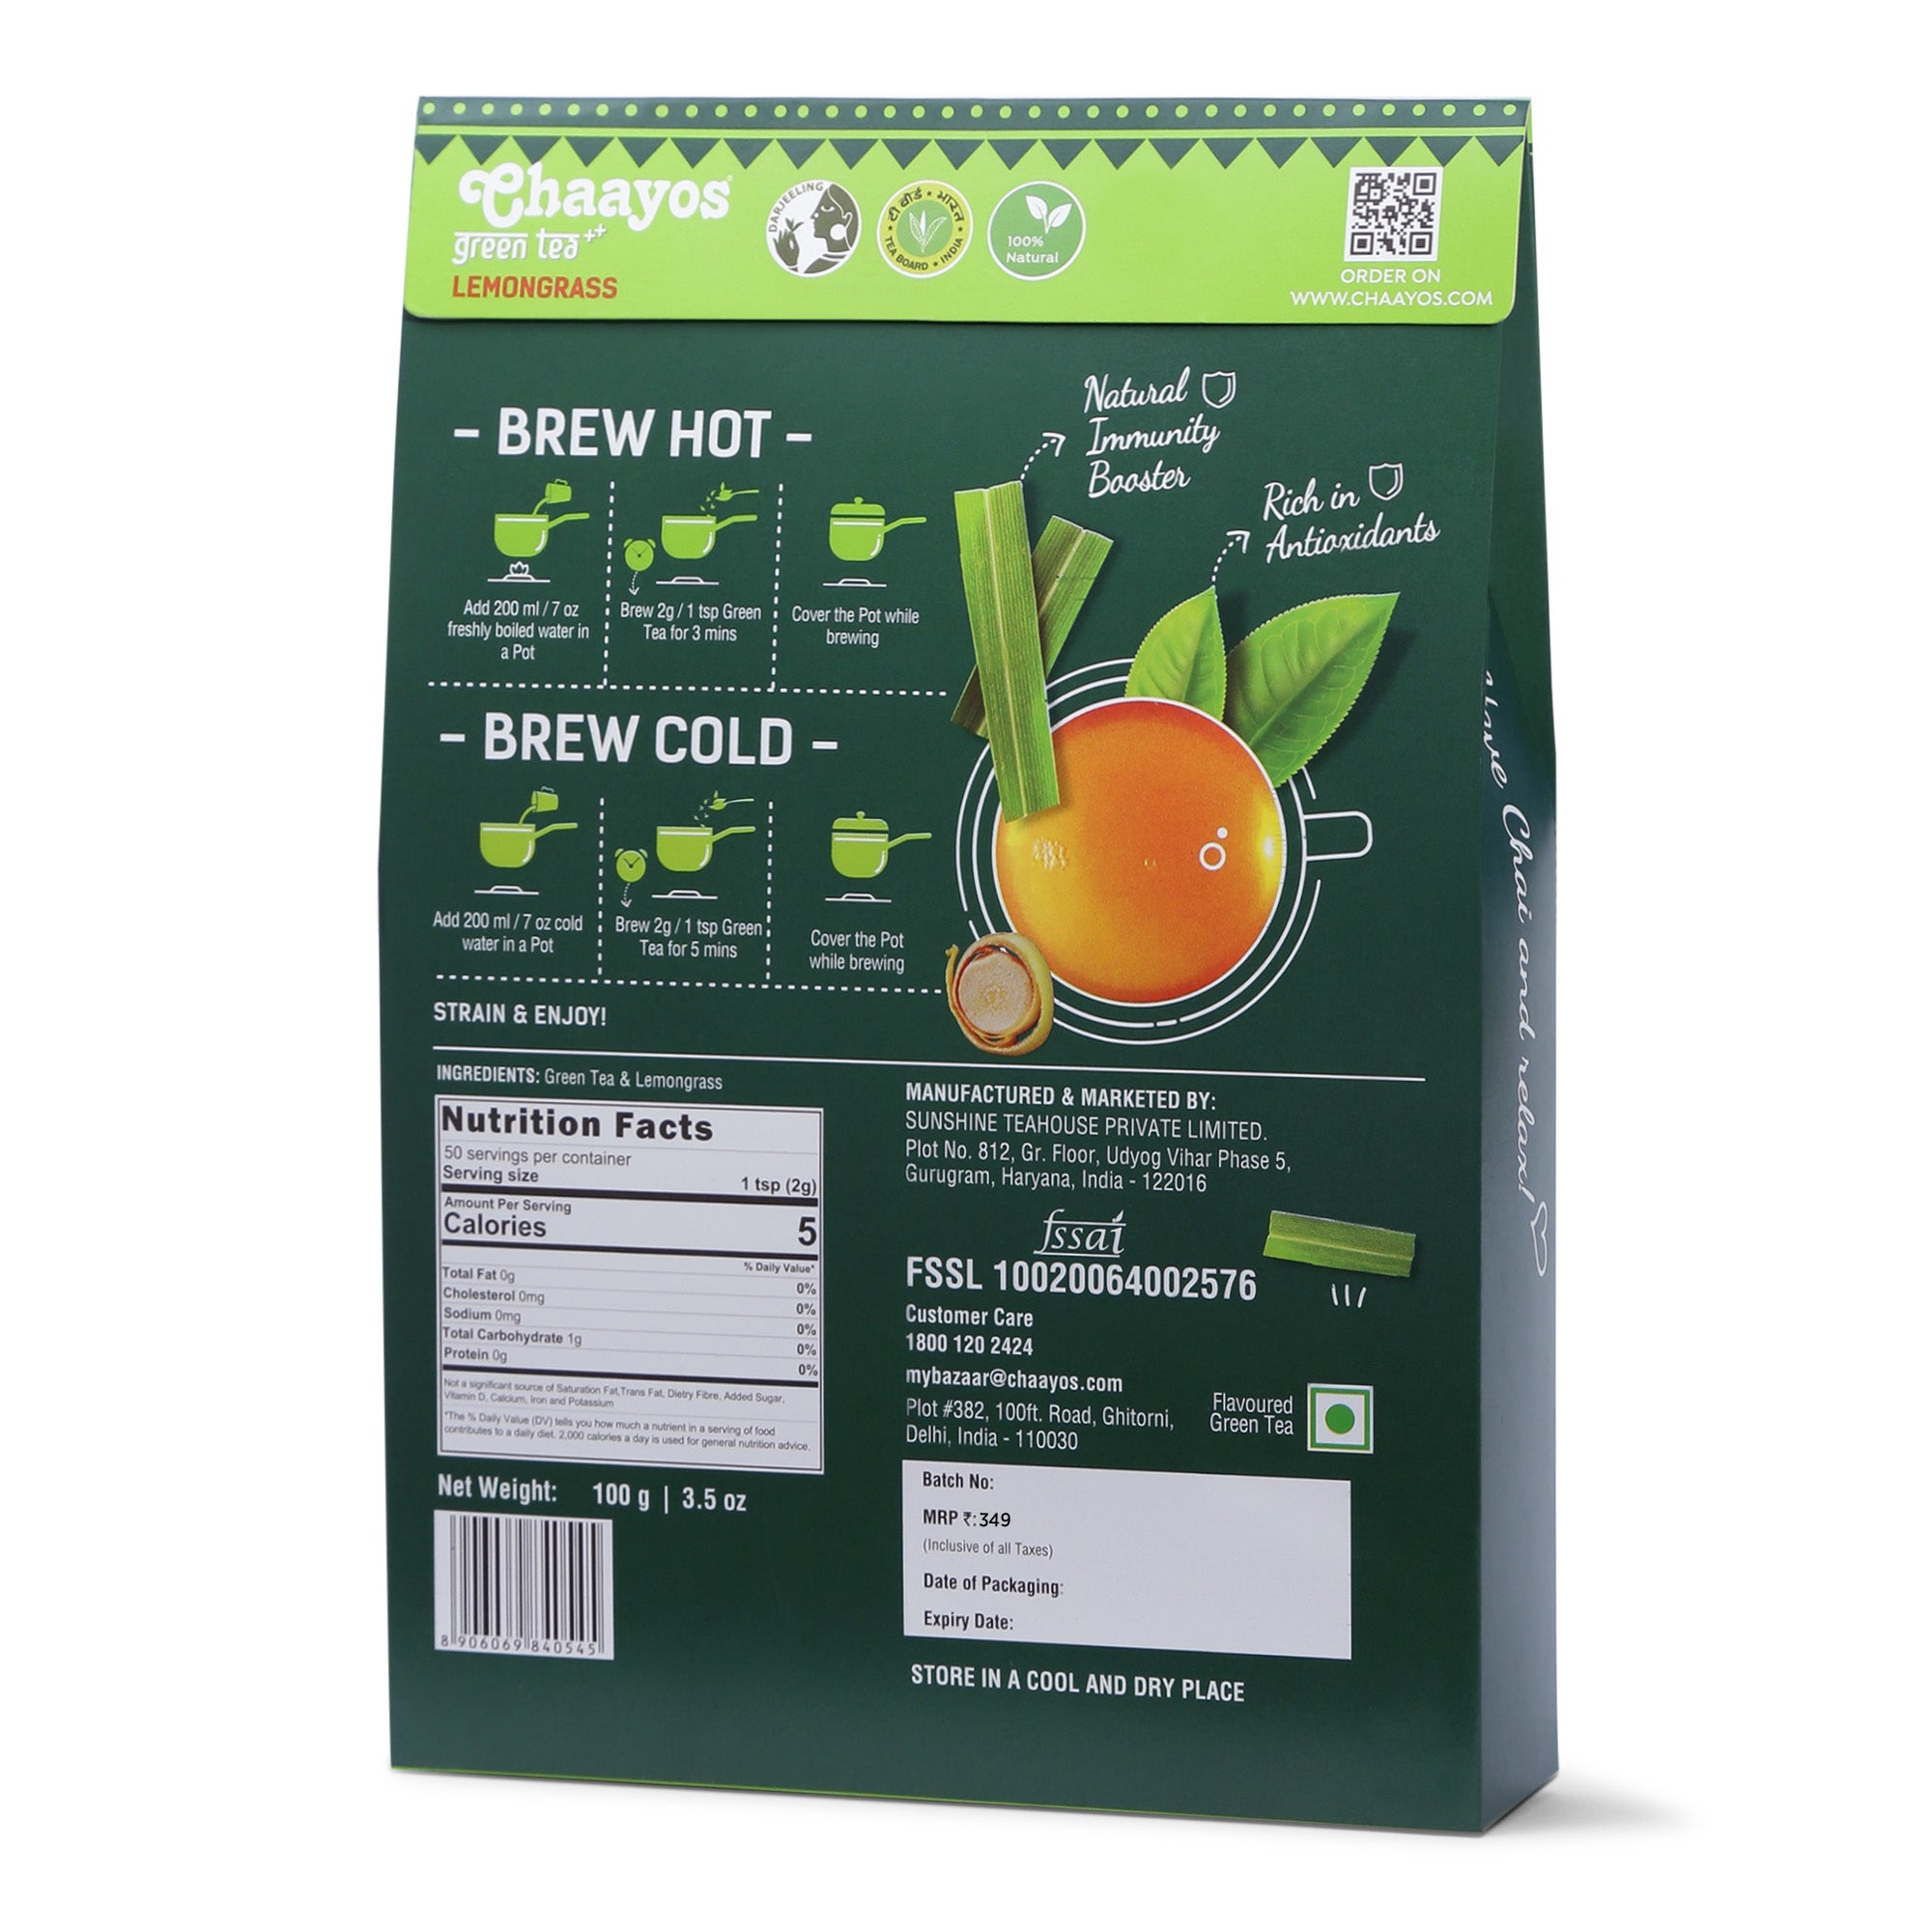 Lemongrass Green Tea - 100g